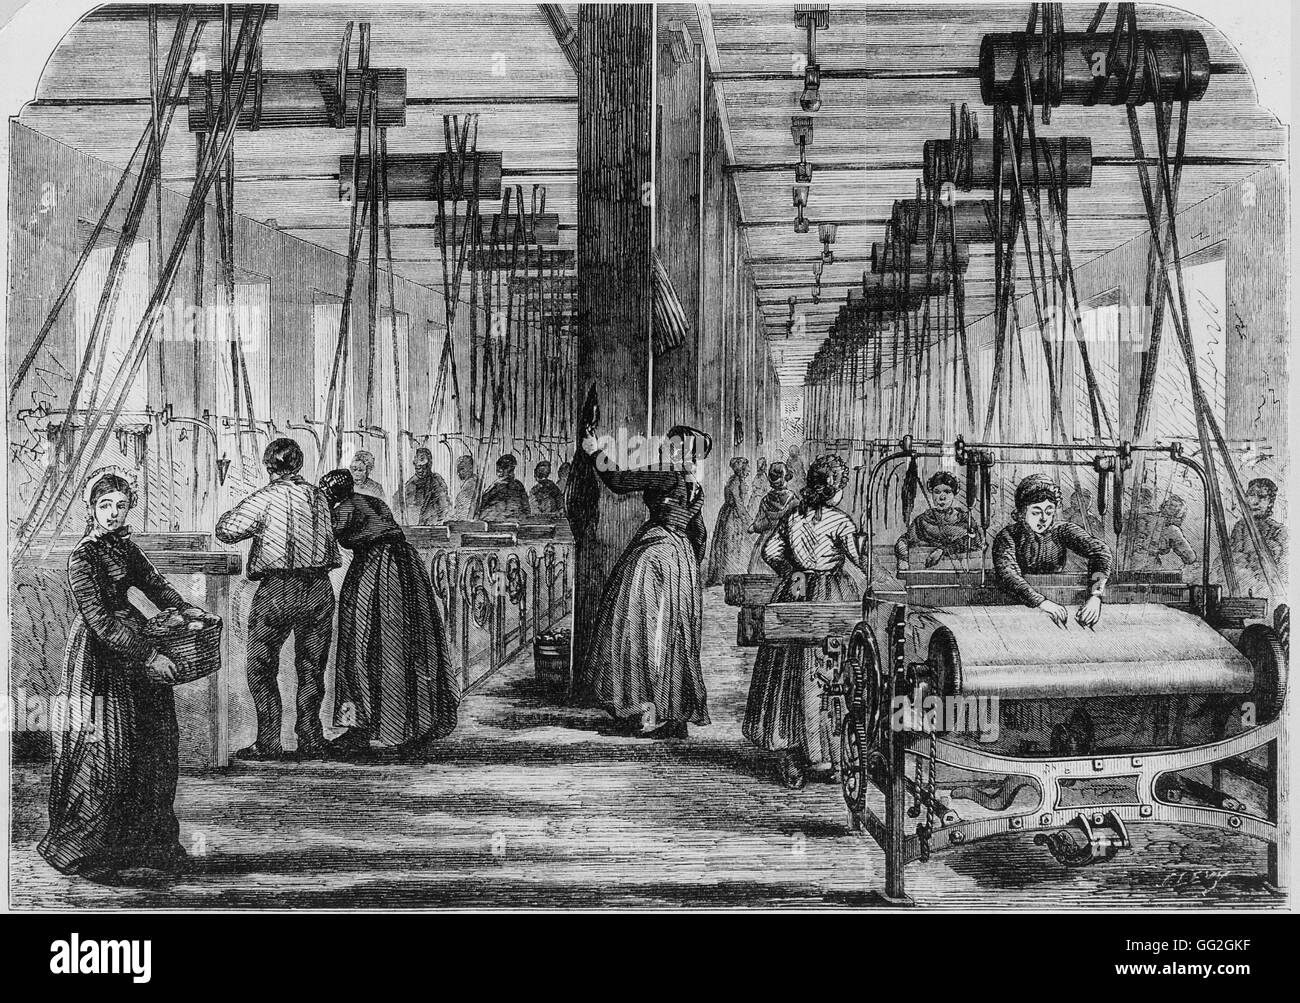 Les femmes travaillant dans une usine de textile dans la région des Vosges (France) Gravure du 19ème siècle Collection privée Banque D'Images